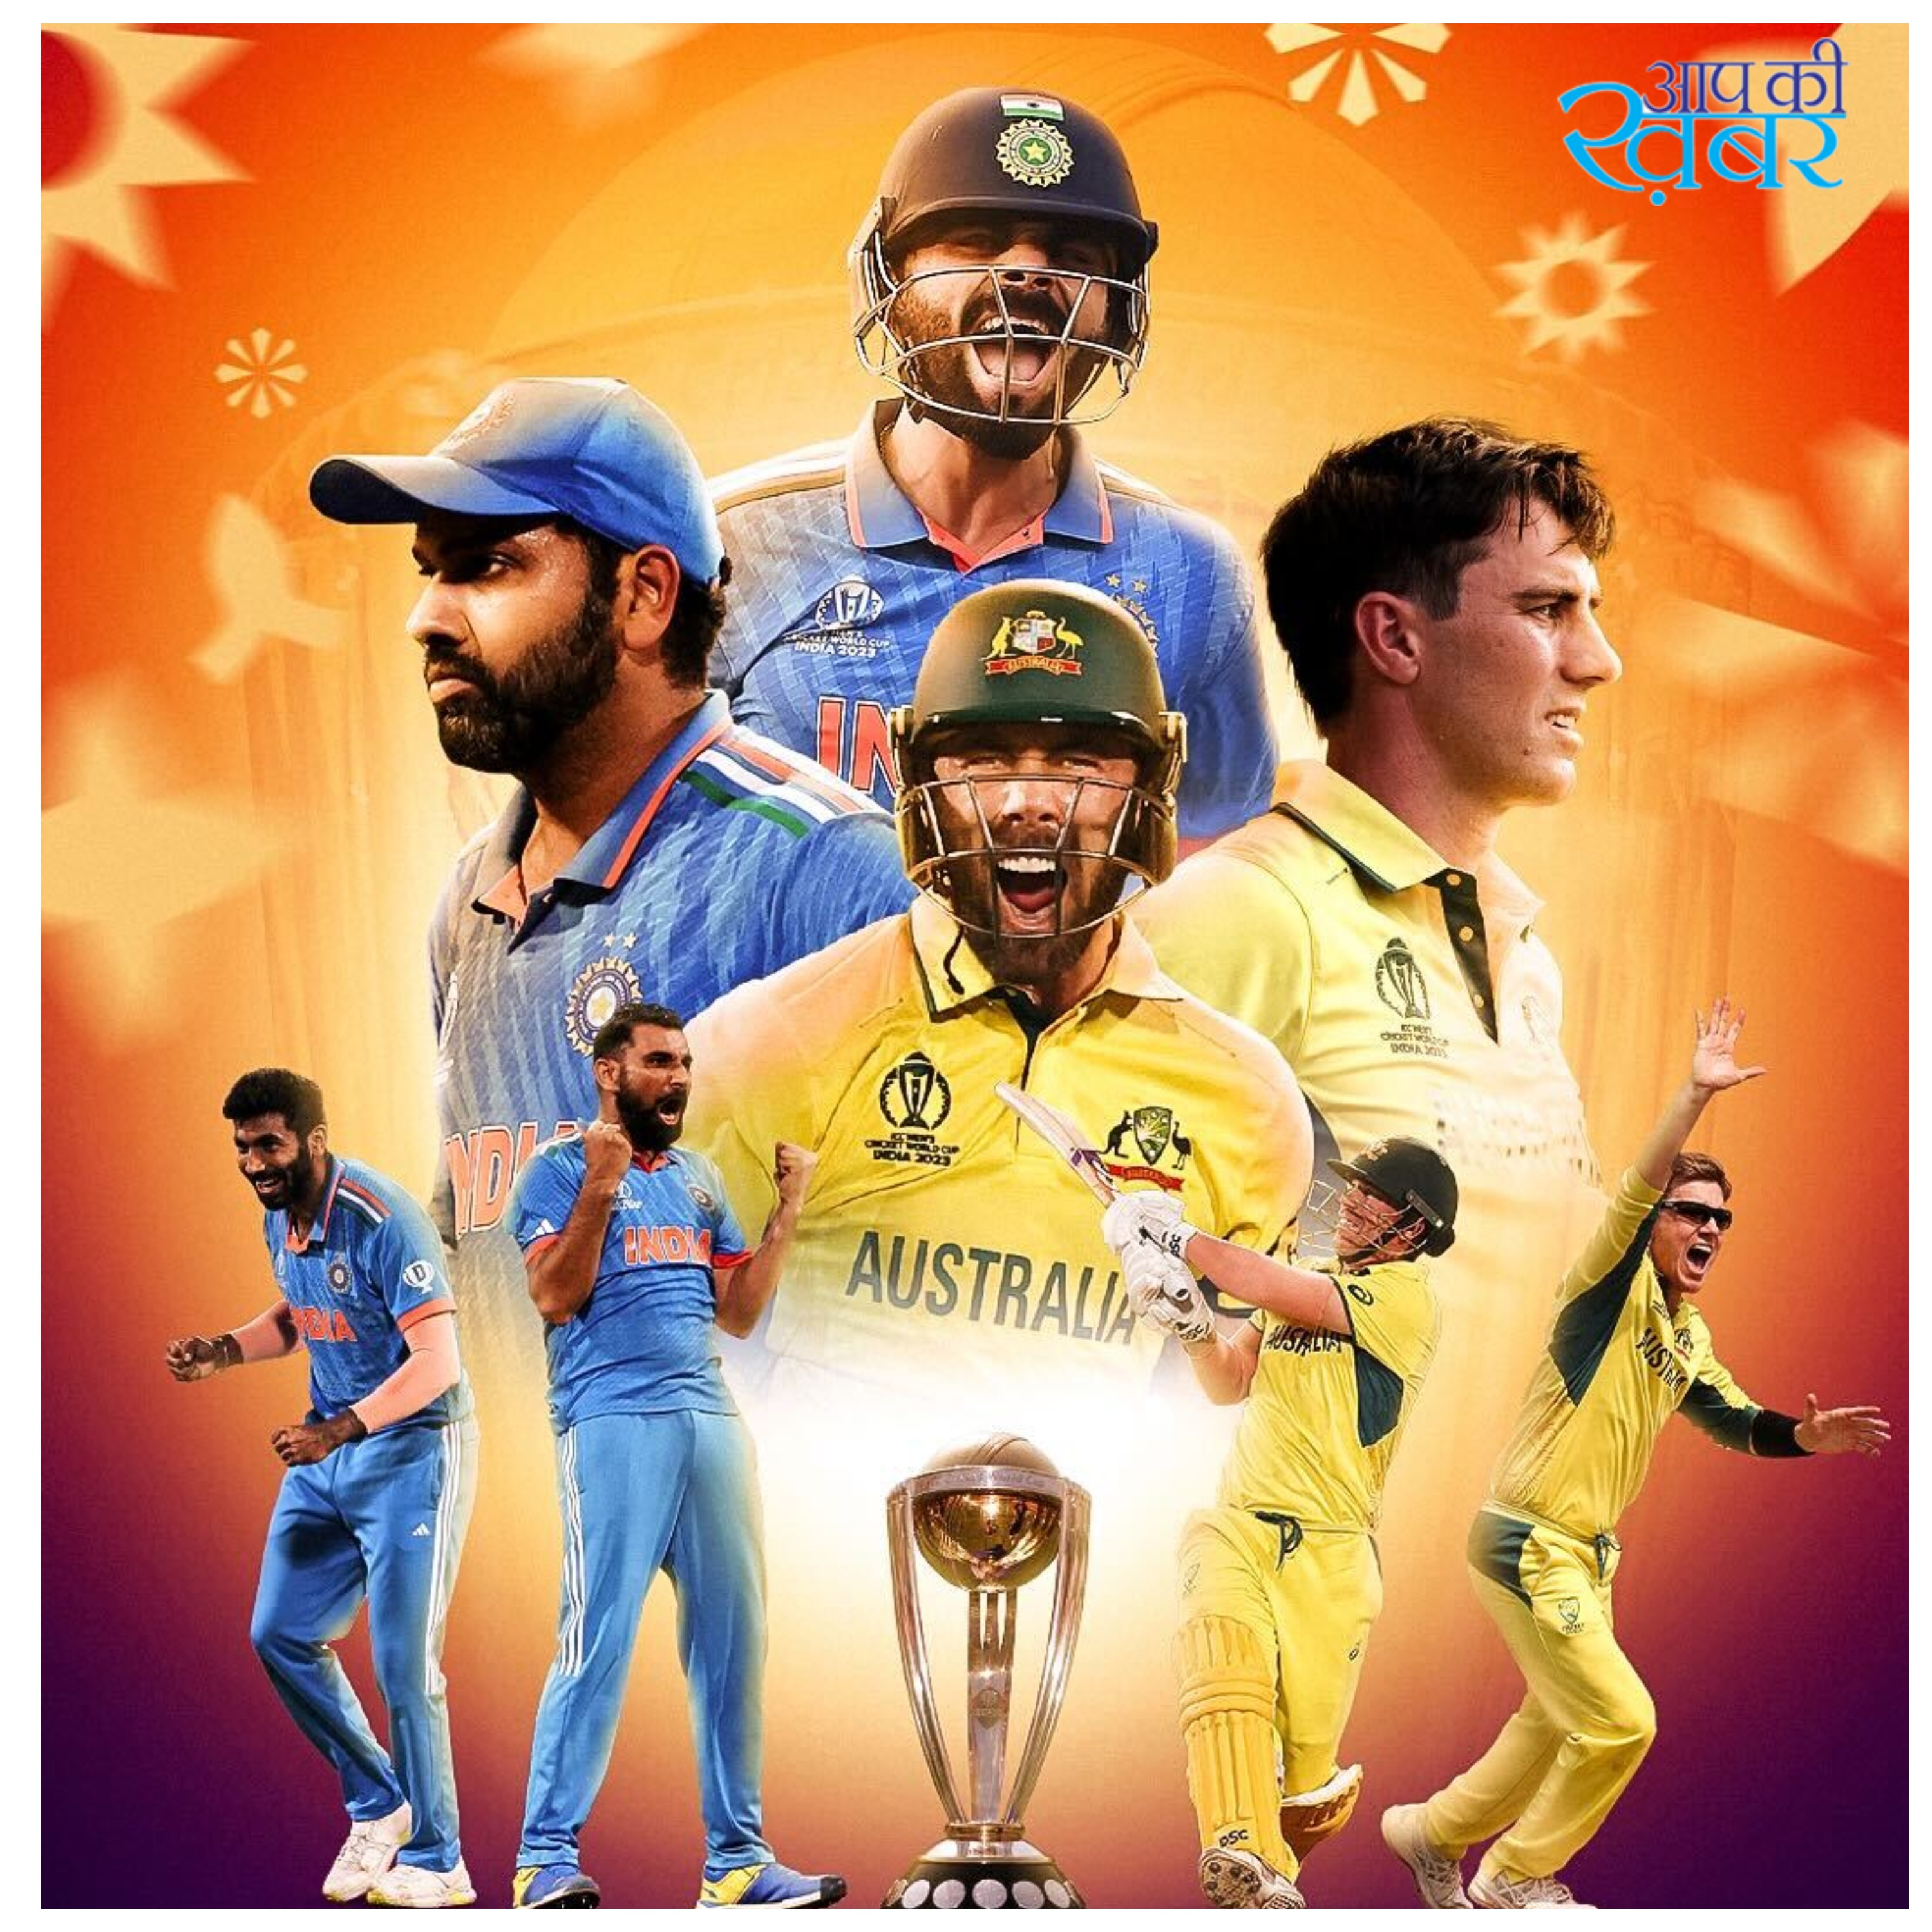 India vs Australia, Final